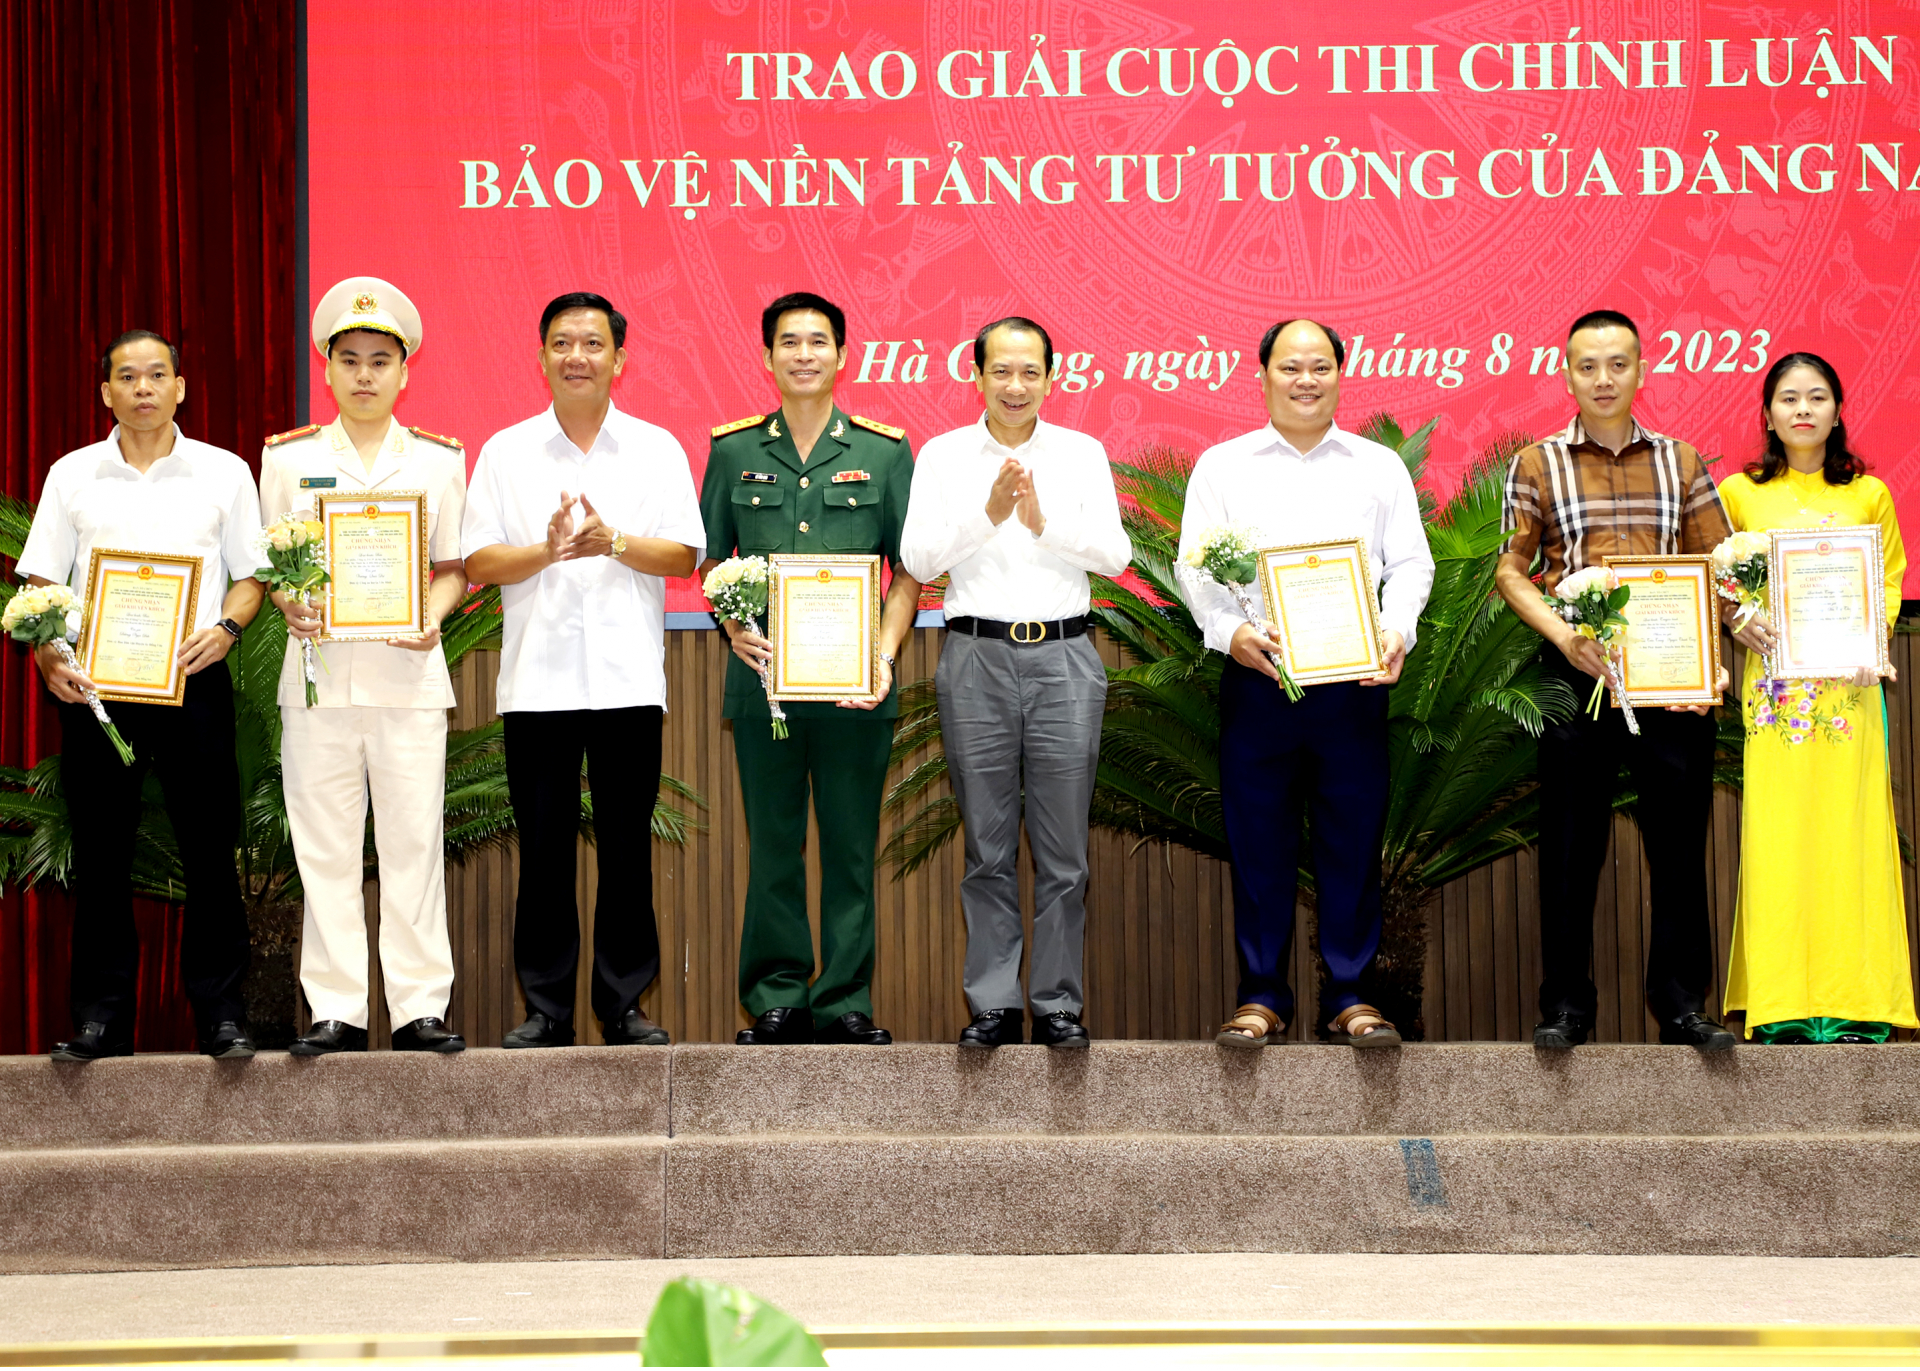 Phó Chủ tịch UBND tỉnh Trần Đức Quý và Phó Trưởng ban Thường trực Ban Tuyên giáo Tỉnh ủy Trần Khánh Lâm trao giải Khuyến khích cuộc thi Chính luận cho các tác giả